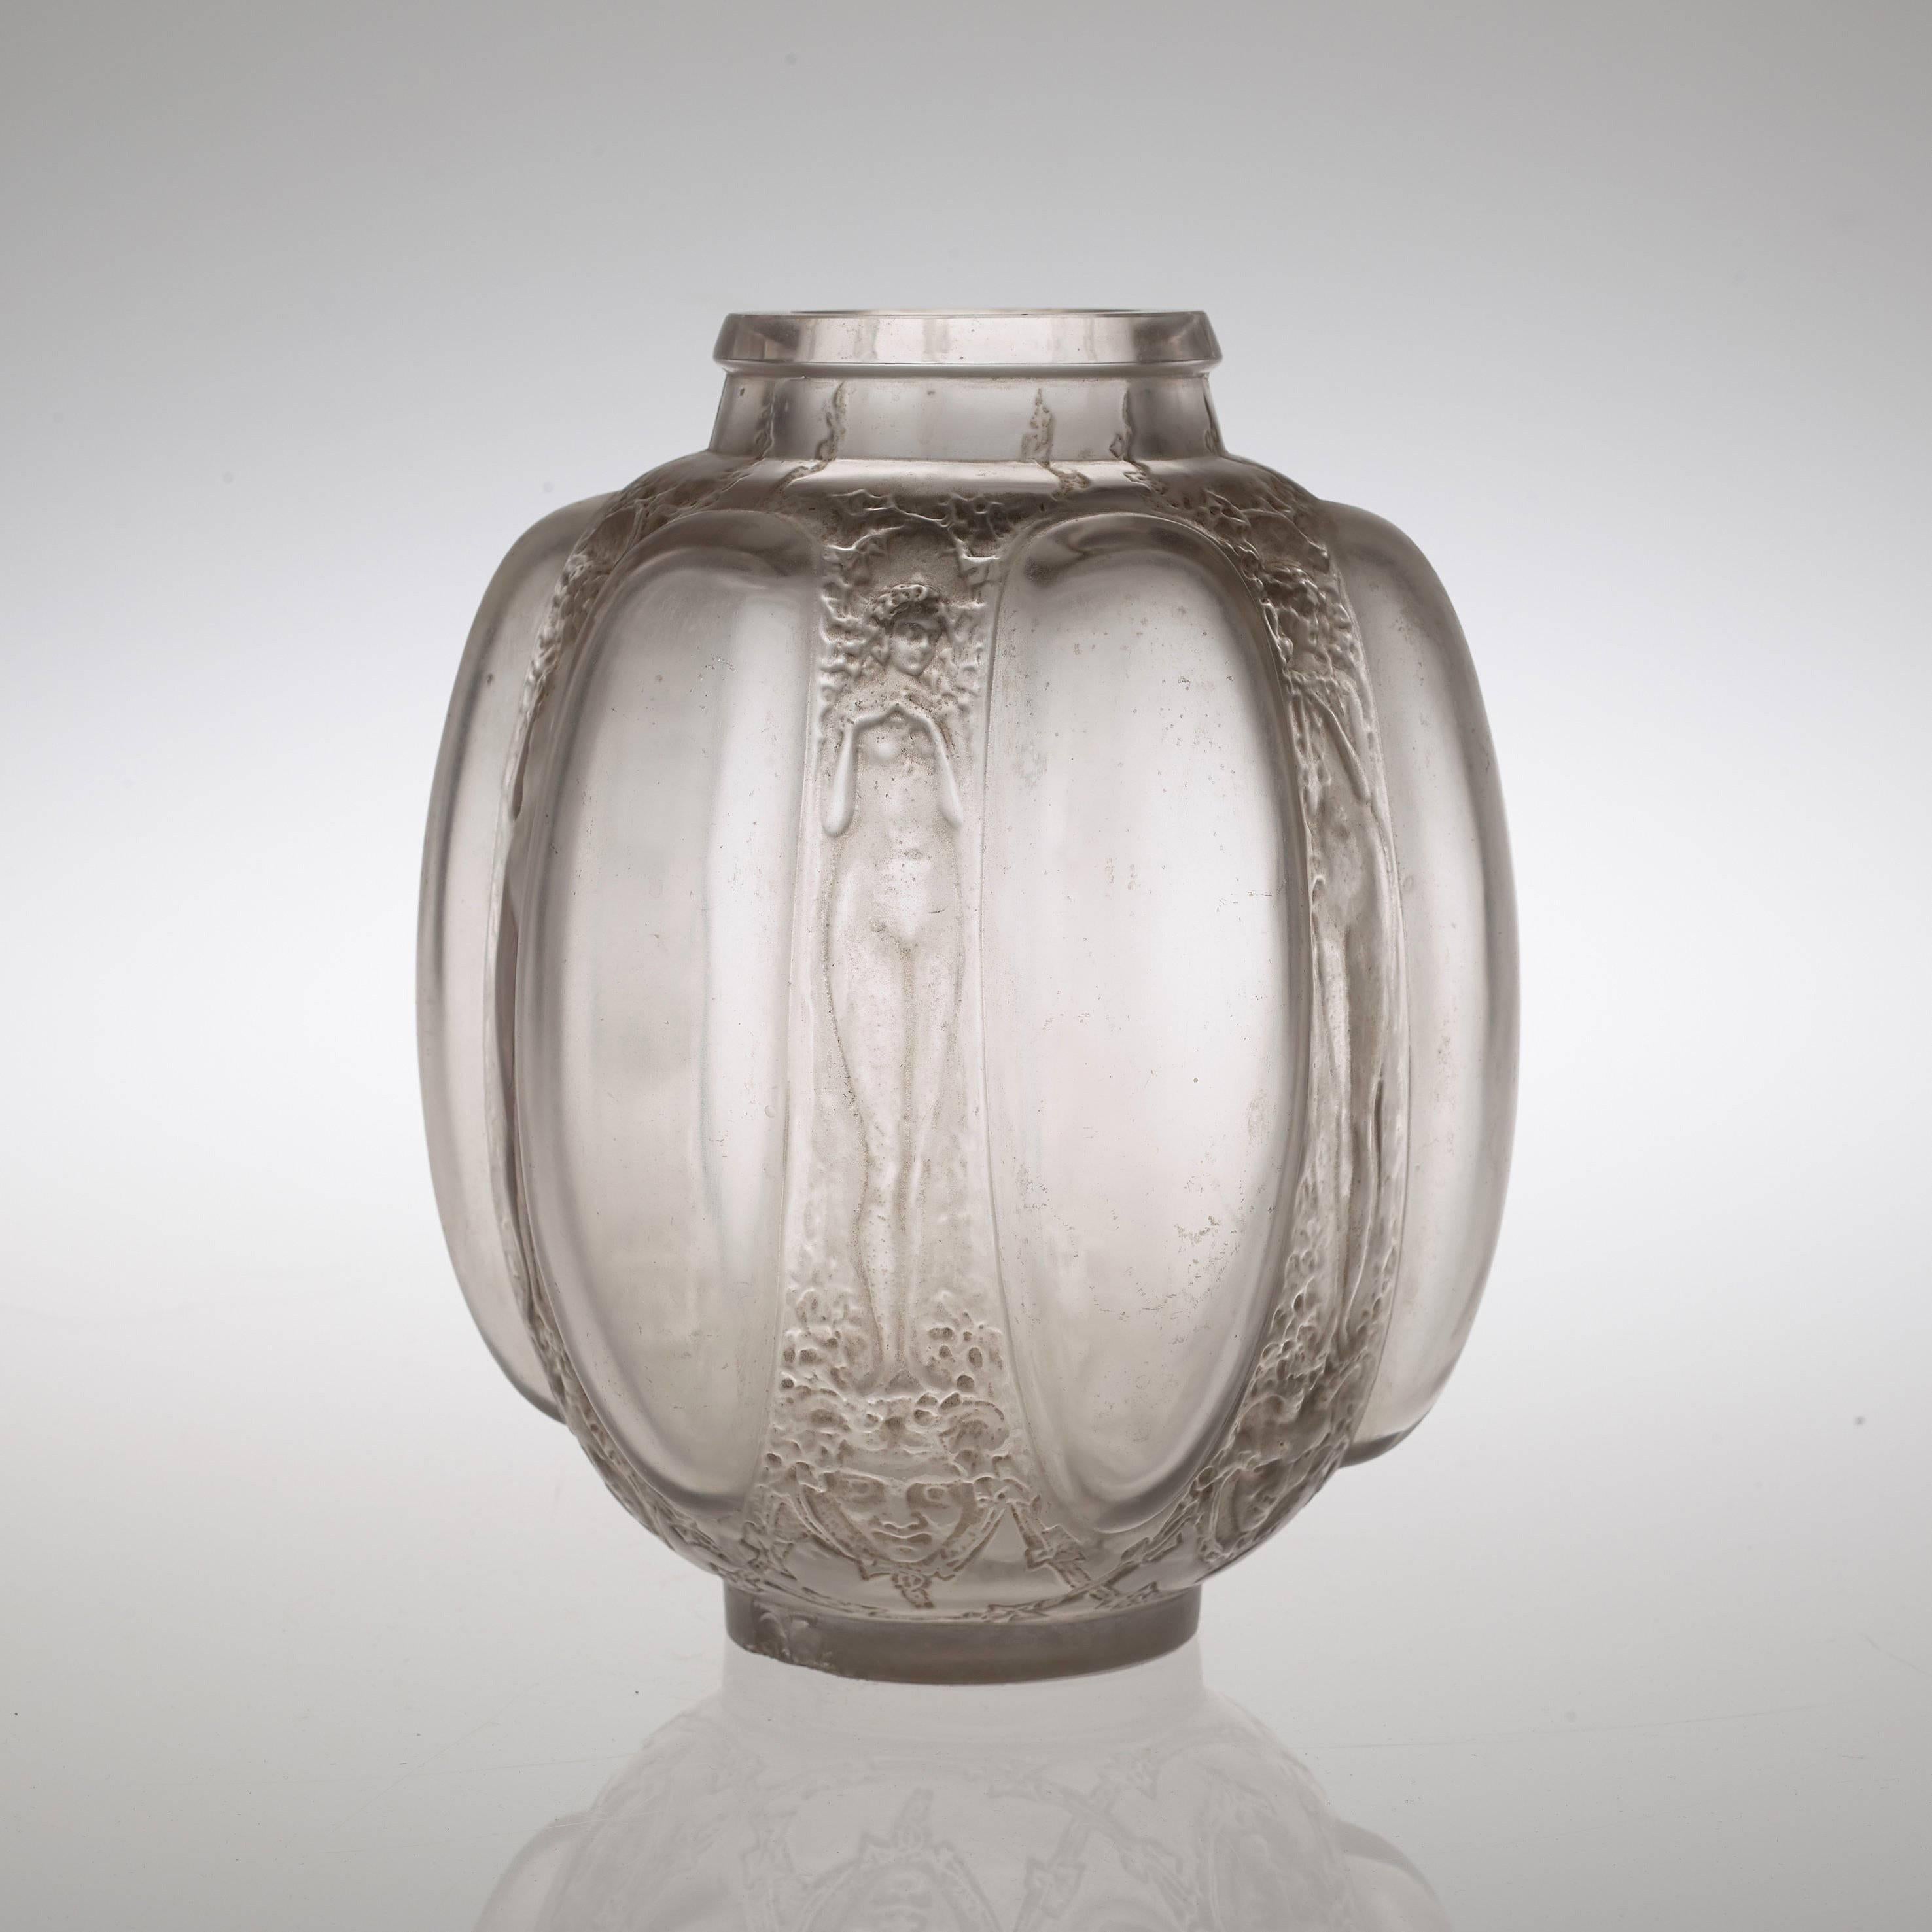 This vase was known to be designed in 1912. Related literature - Félix Marcilhac, 'René Lalique Catalogue Raisonné de l'oeuvre de Verre', catalogue no 886, p 414.

Genuine article. Base engraved 